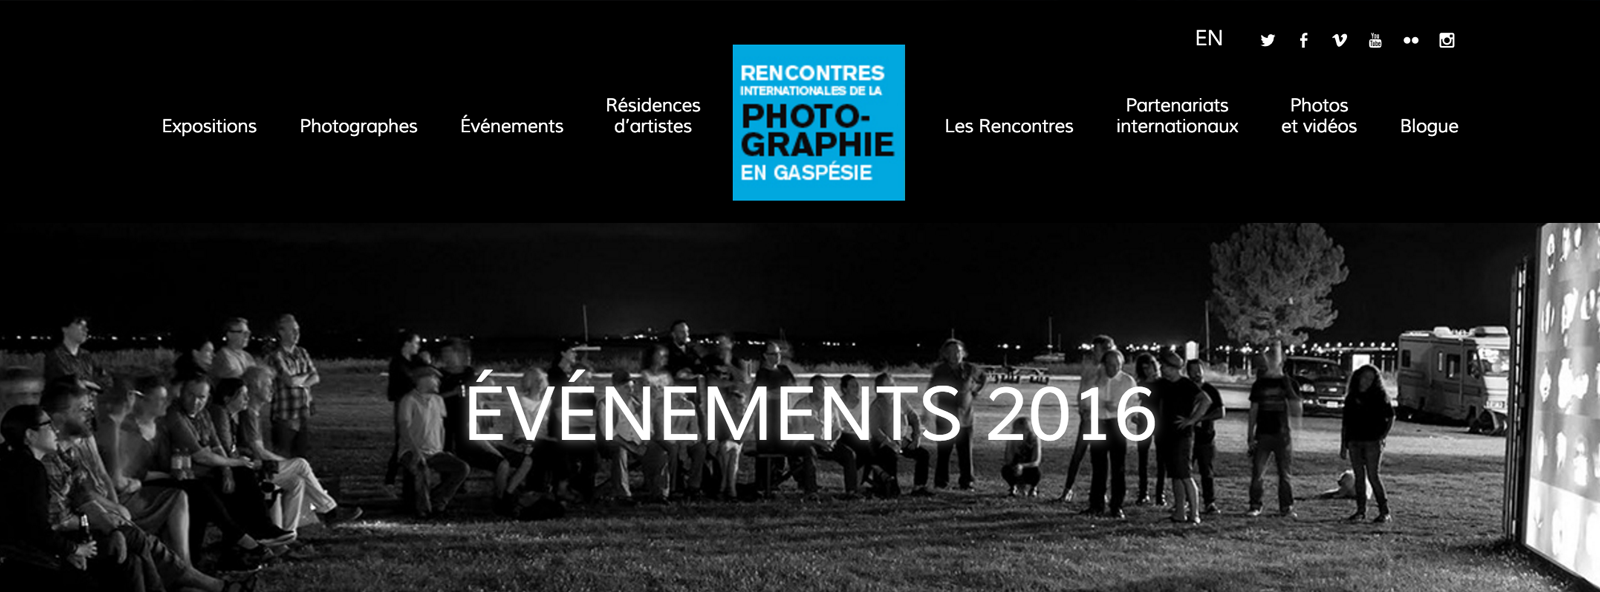 #photogaspesie Rencontre Internationales de la photographie en Gaspésie | tournée des photographes 2016 à Carleton-sur-Mer